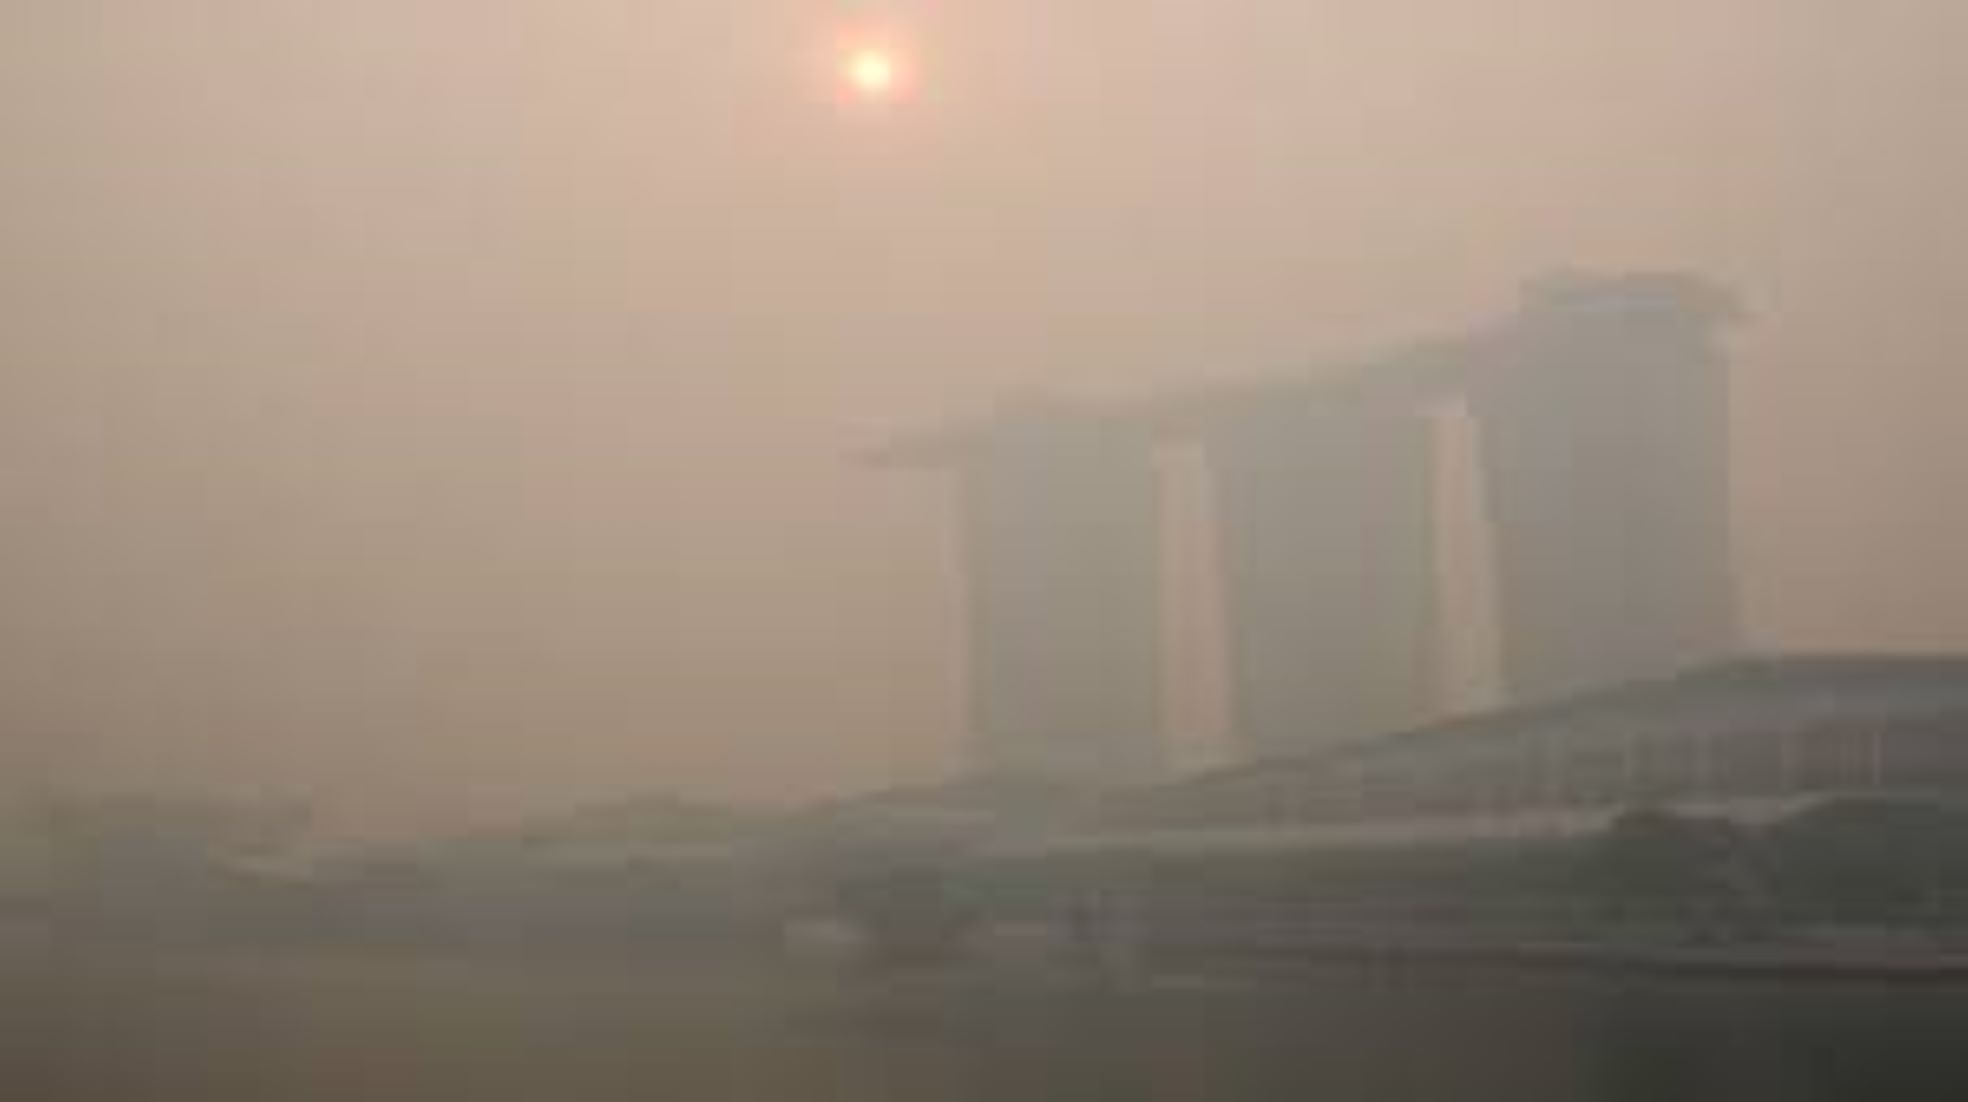 Haze Deteriorates Singapore’s Air Quality